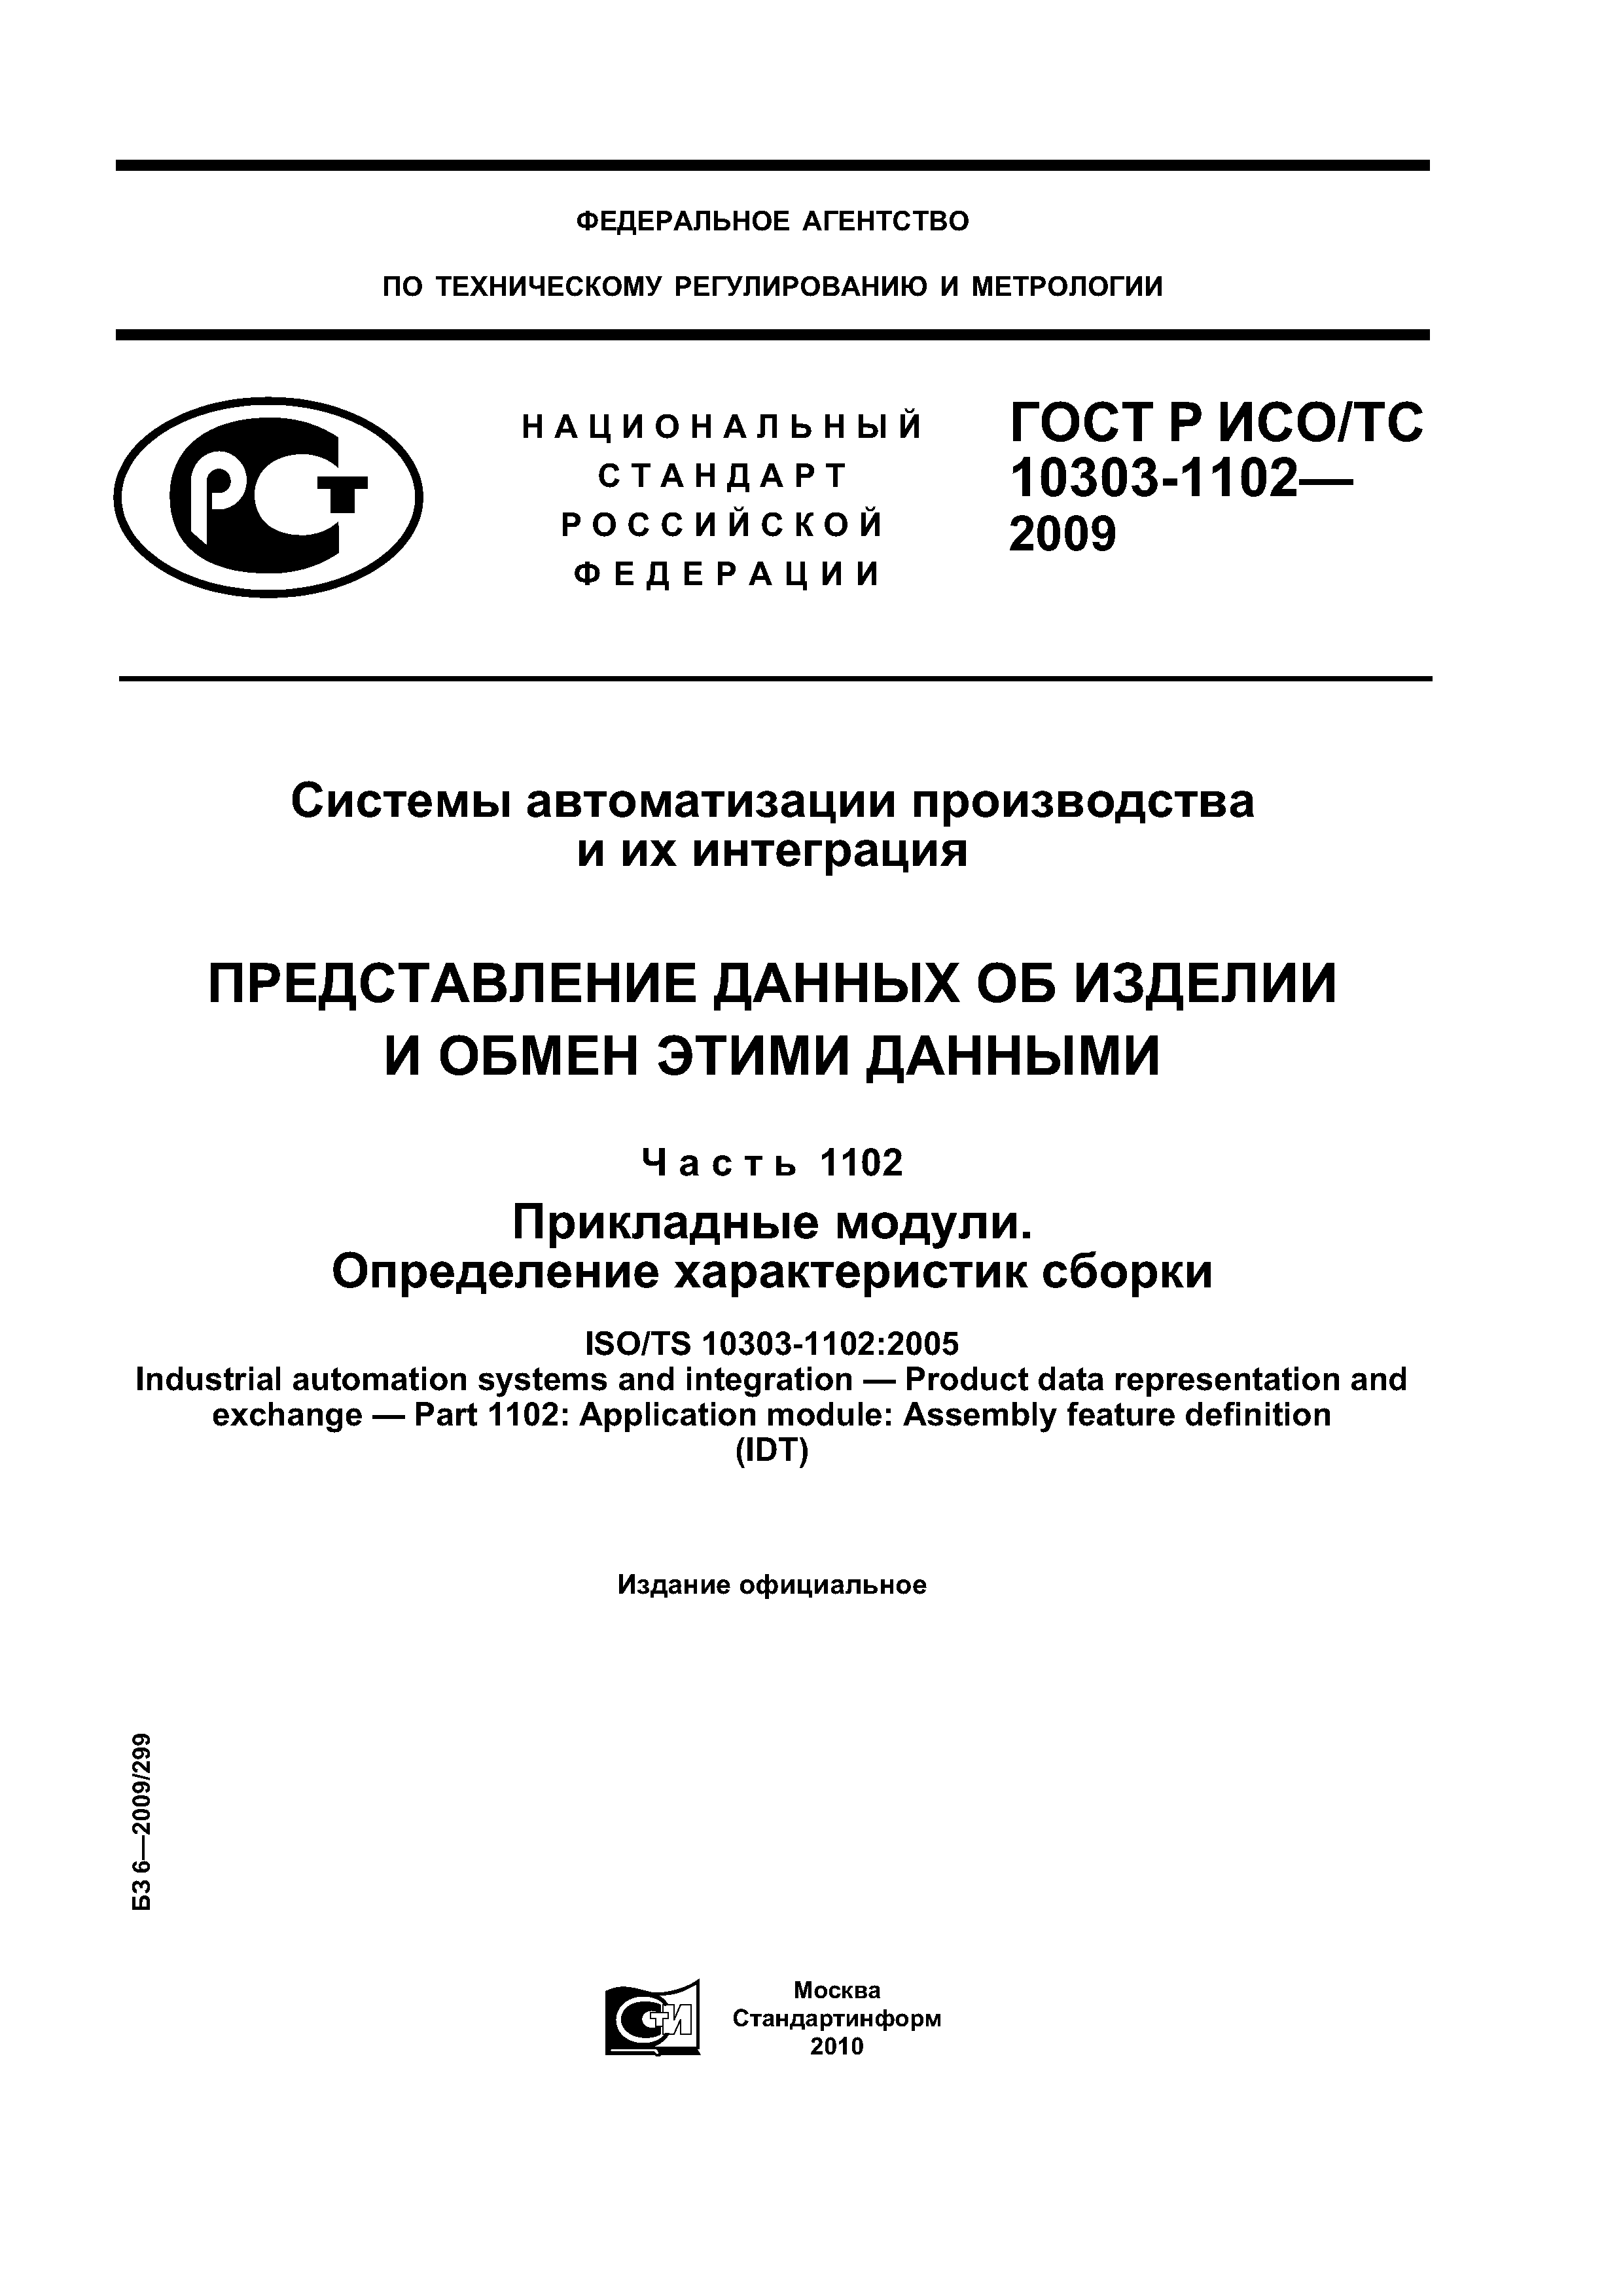 ГОСТ Р ИСО/ТС 10303-1102-2009